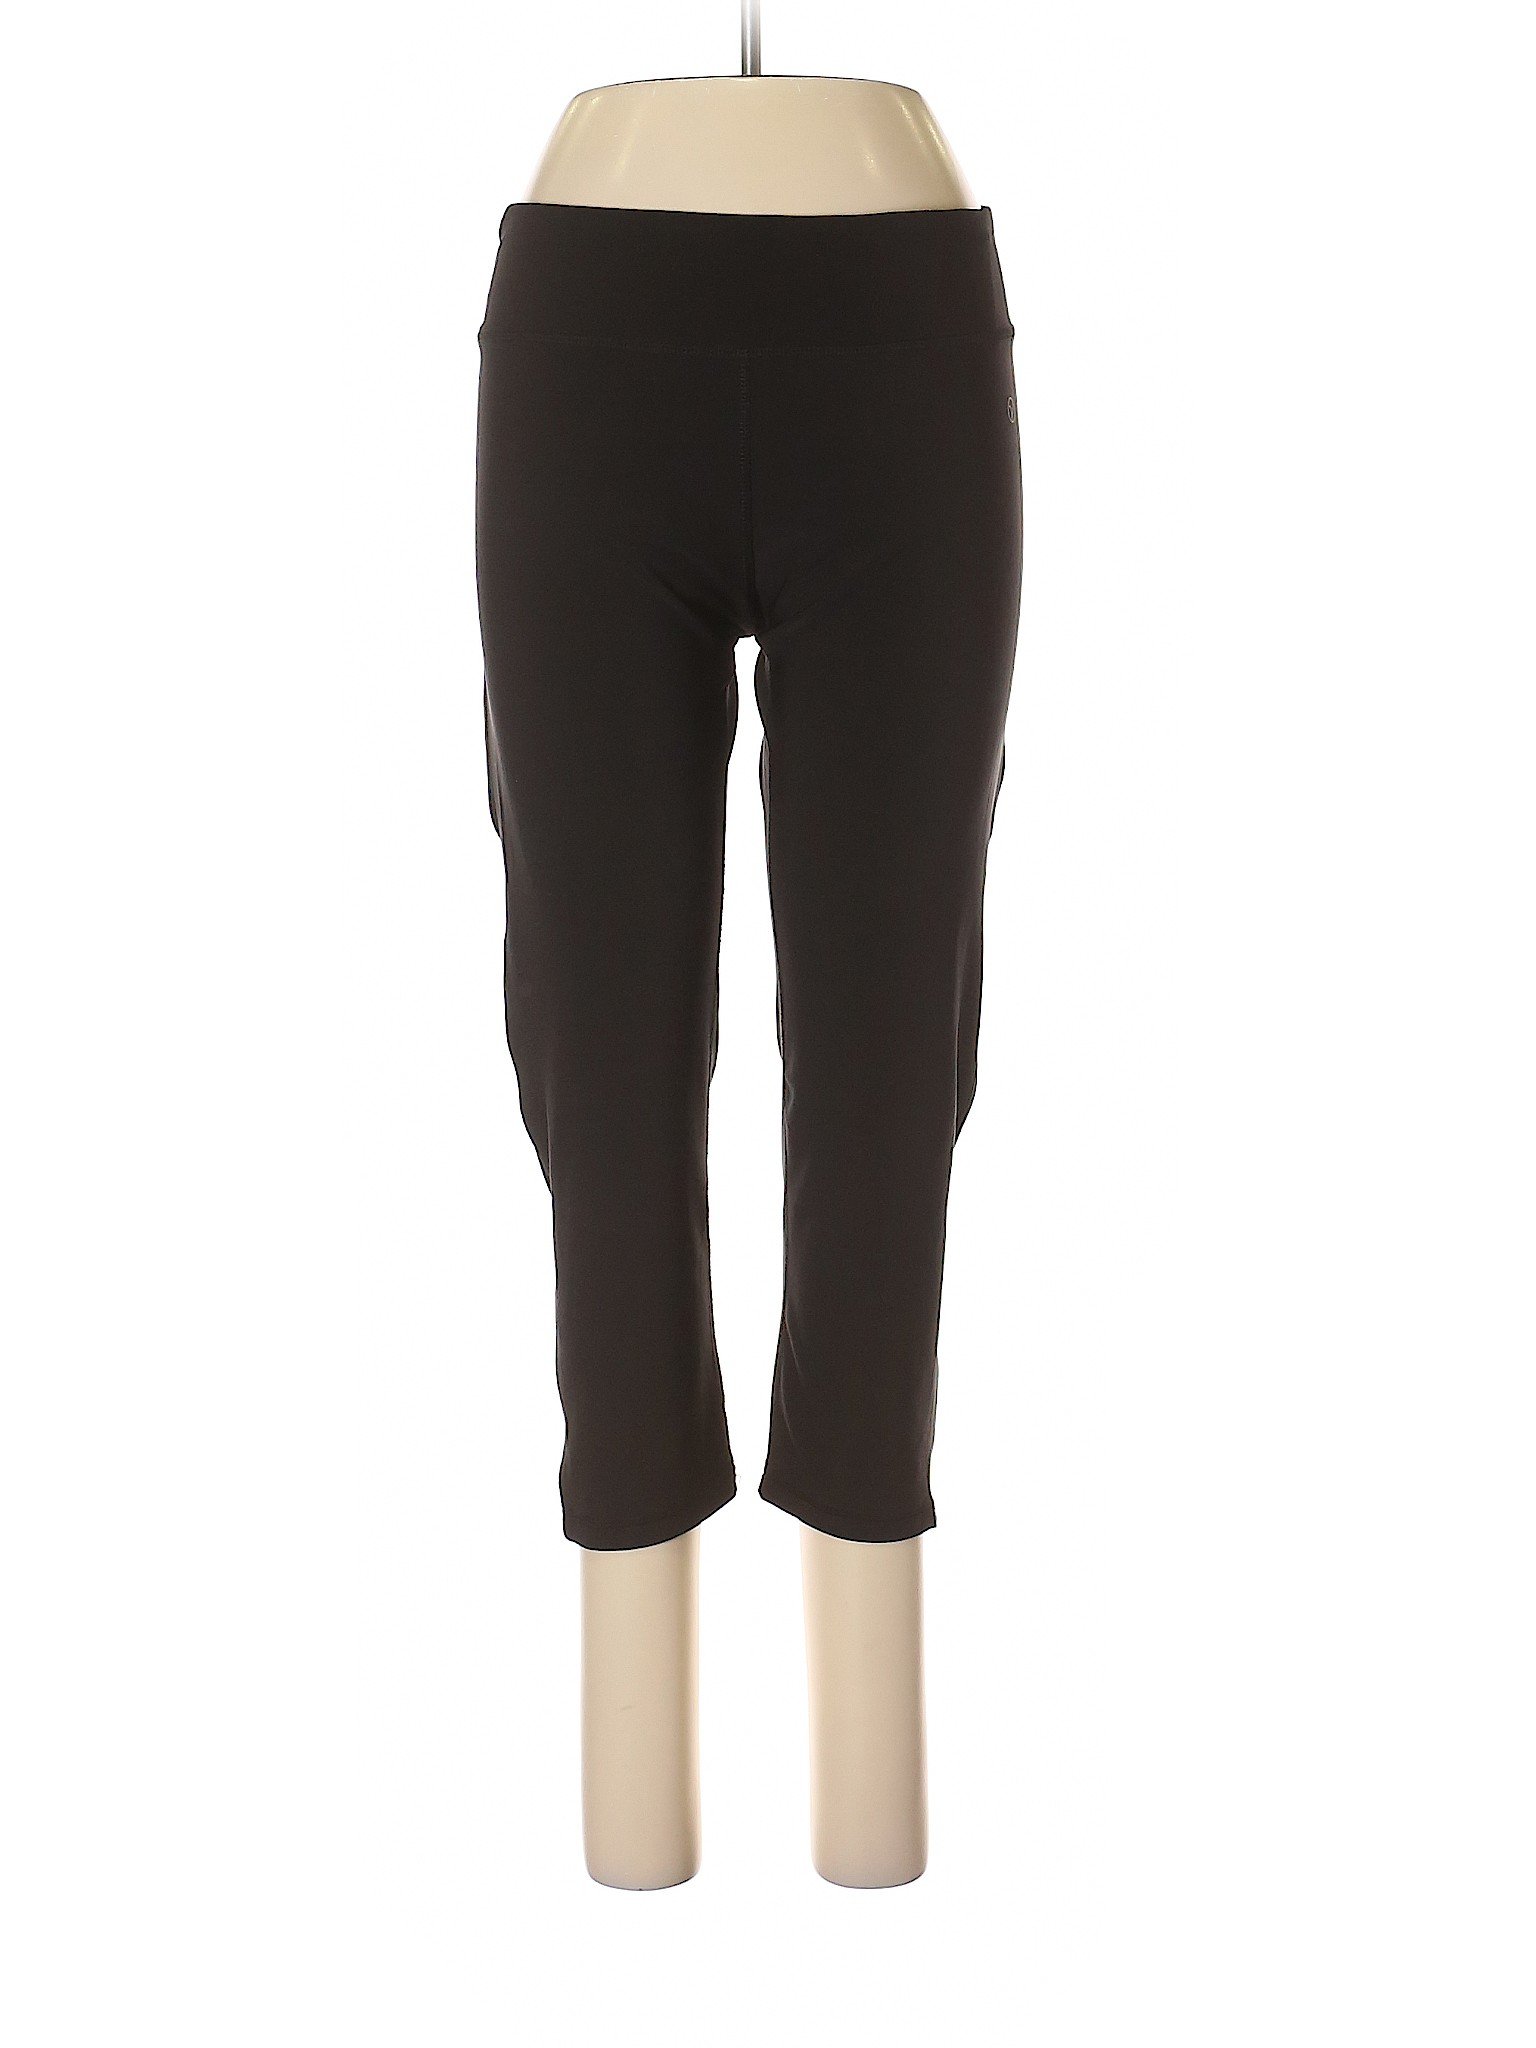 Vogo Solid Black Active Pants Size L - 69% off | thredUP